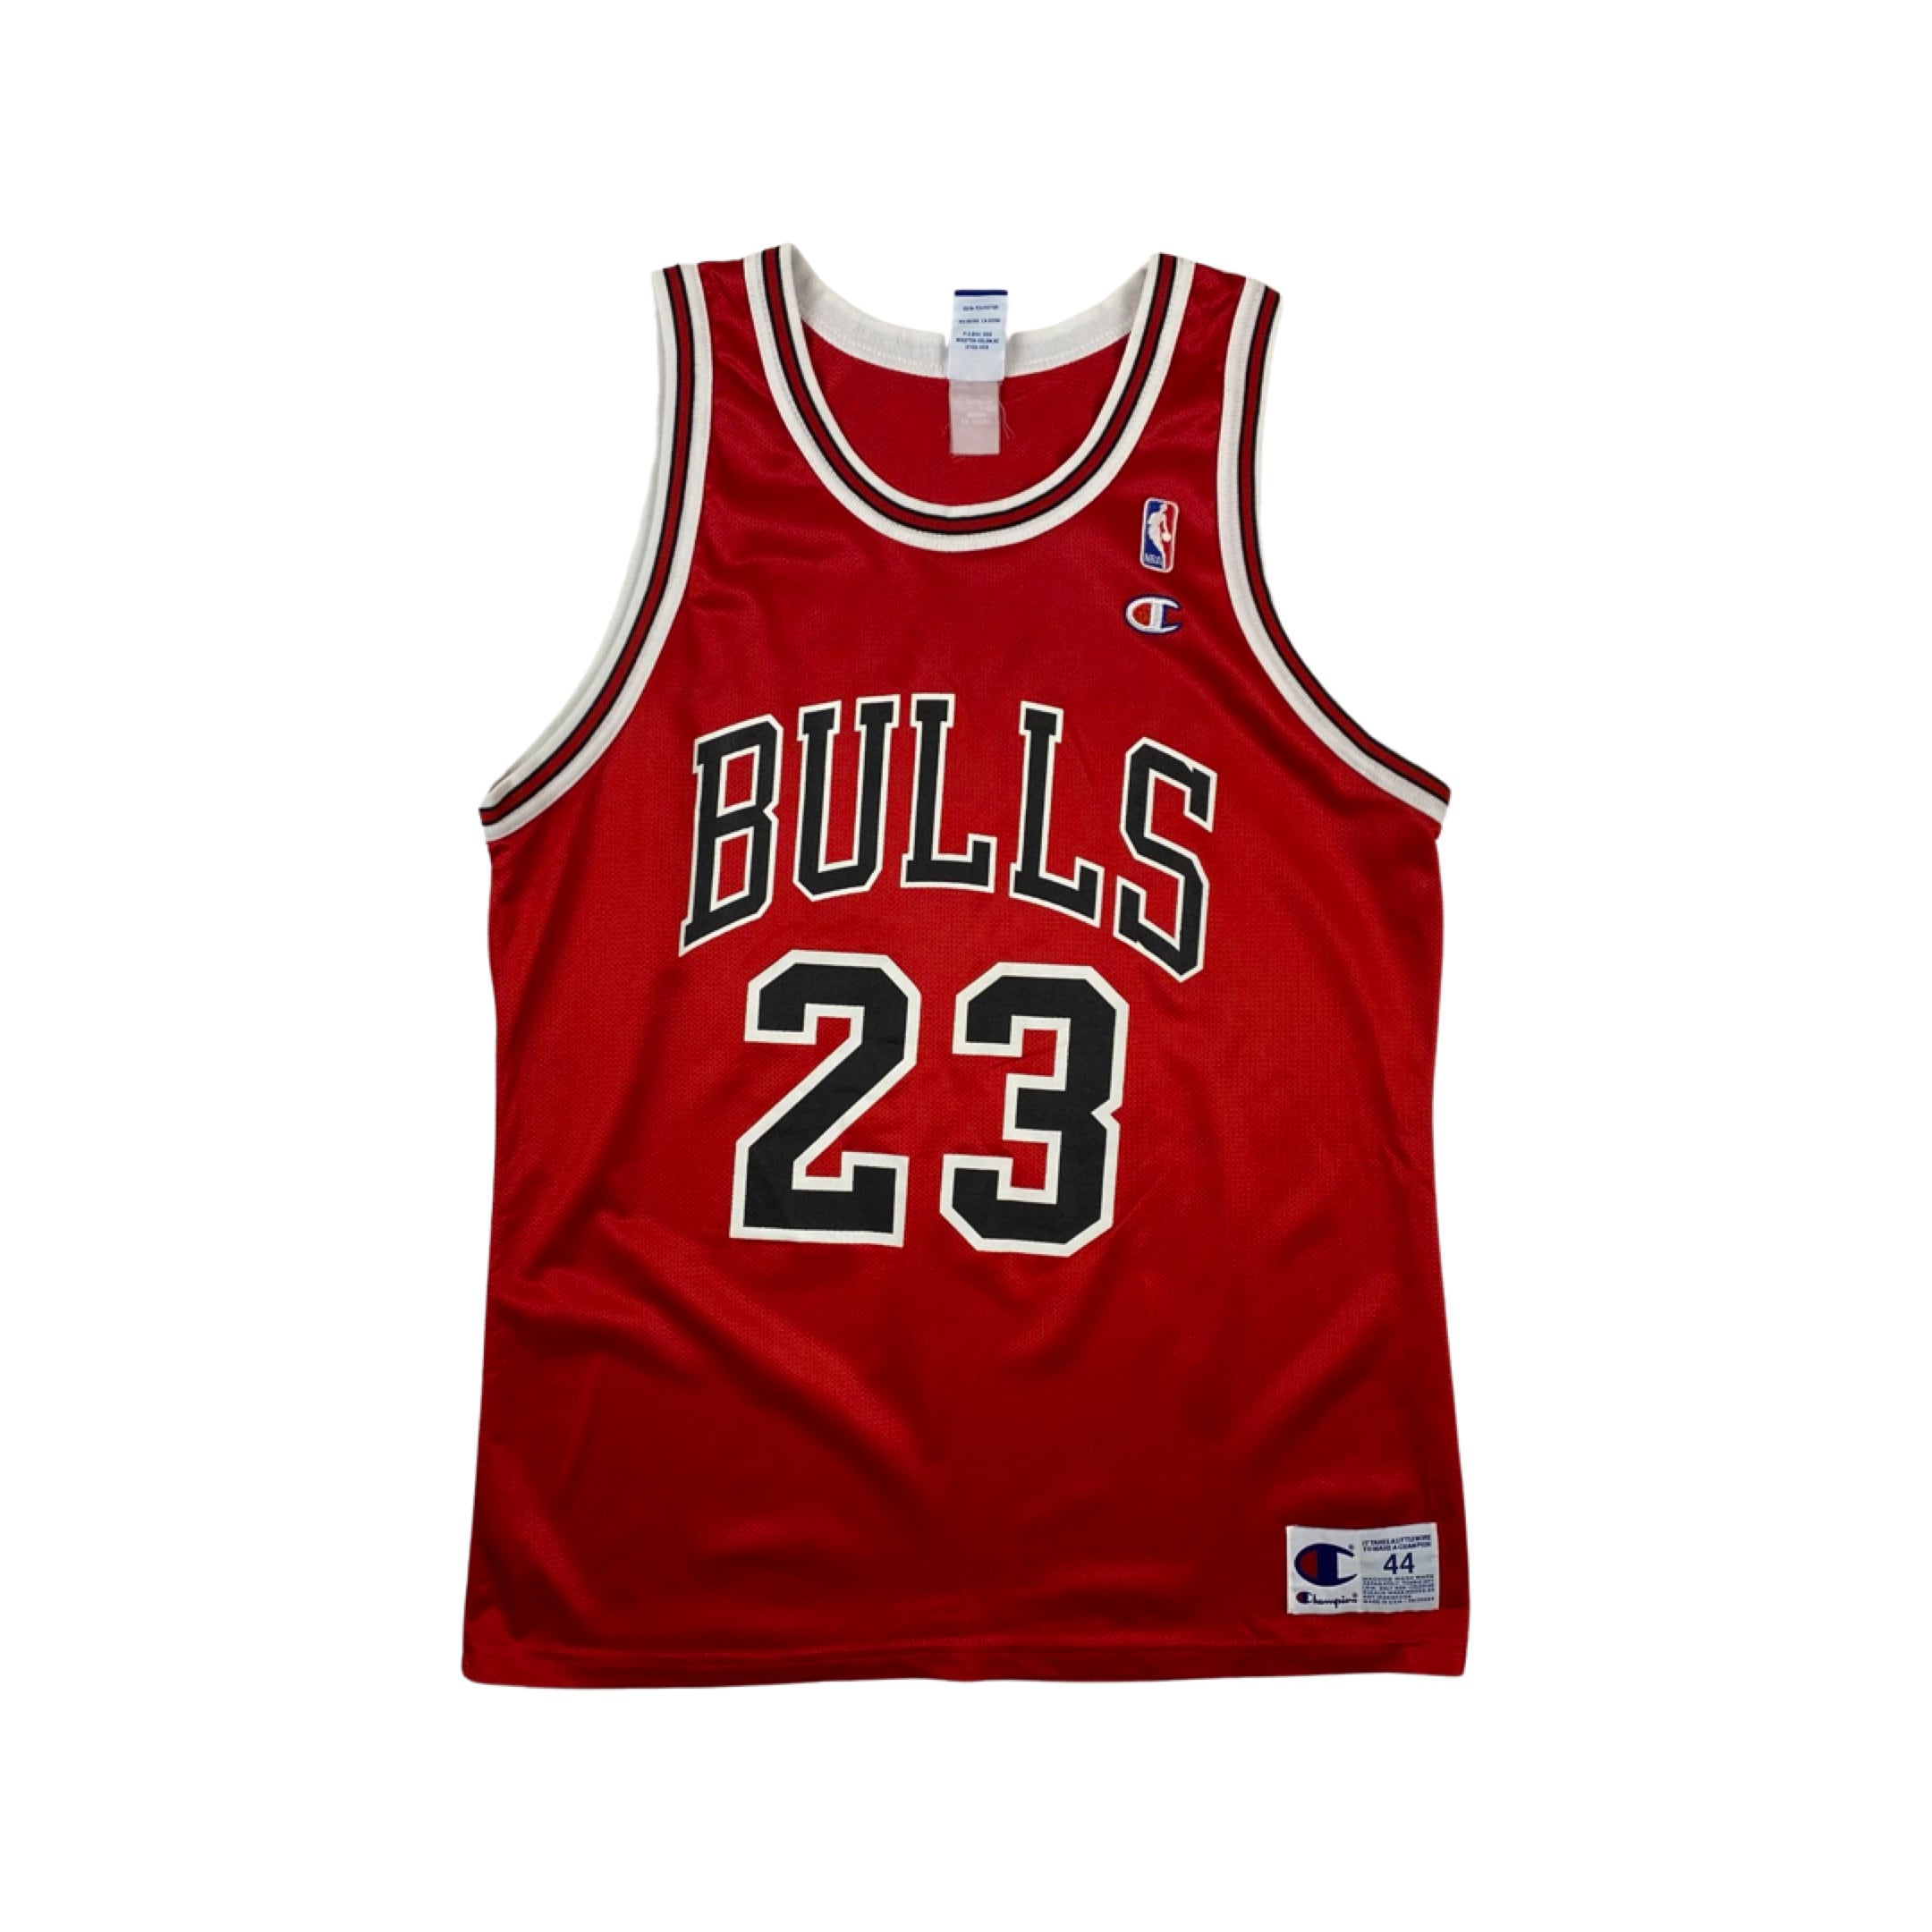 Bulls 23 Shirt - Etsy